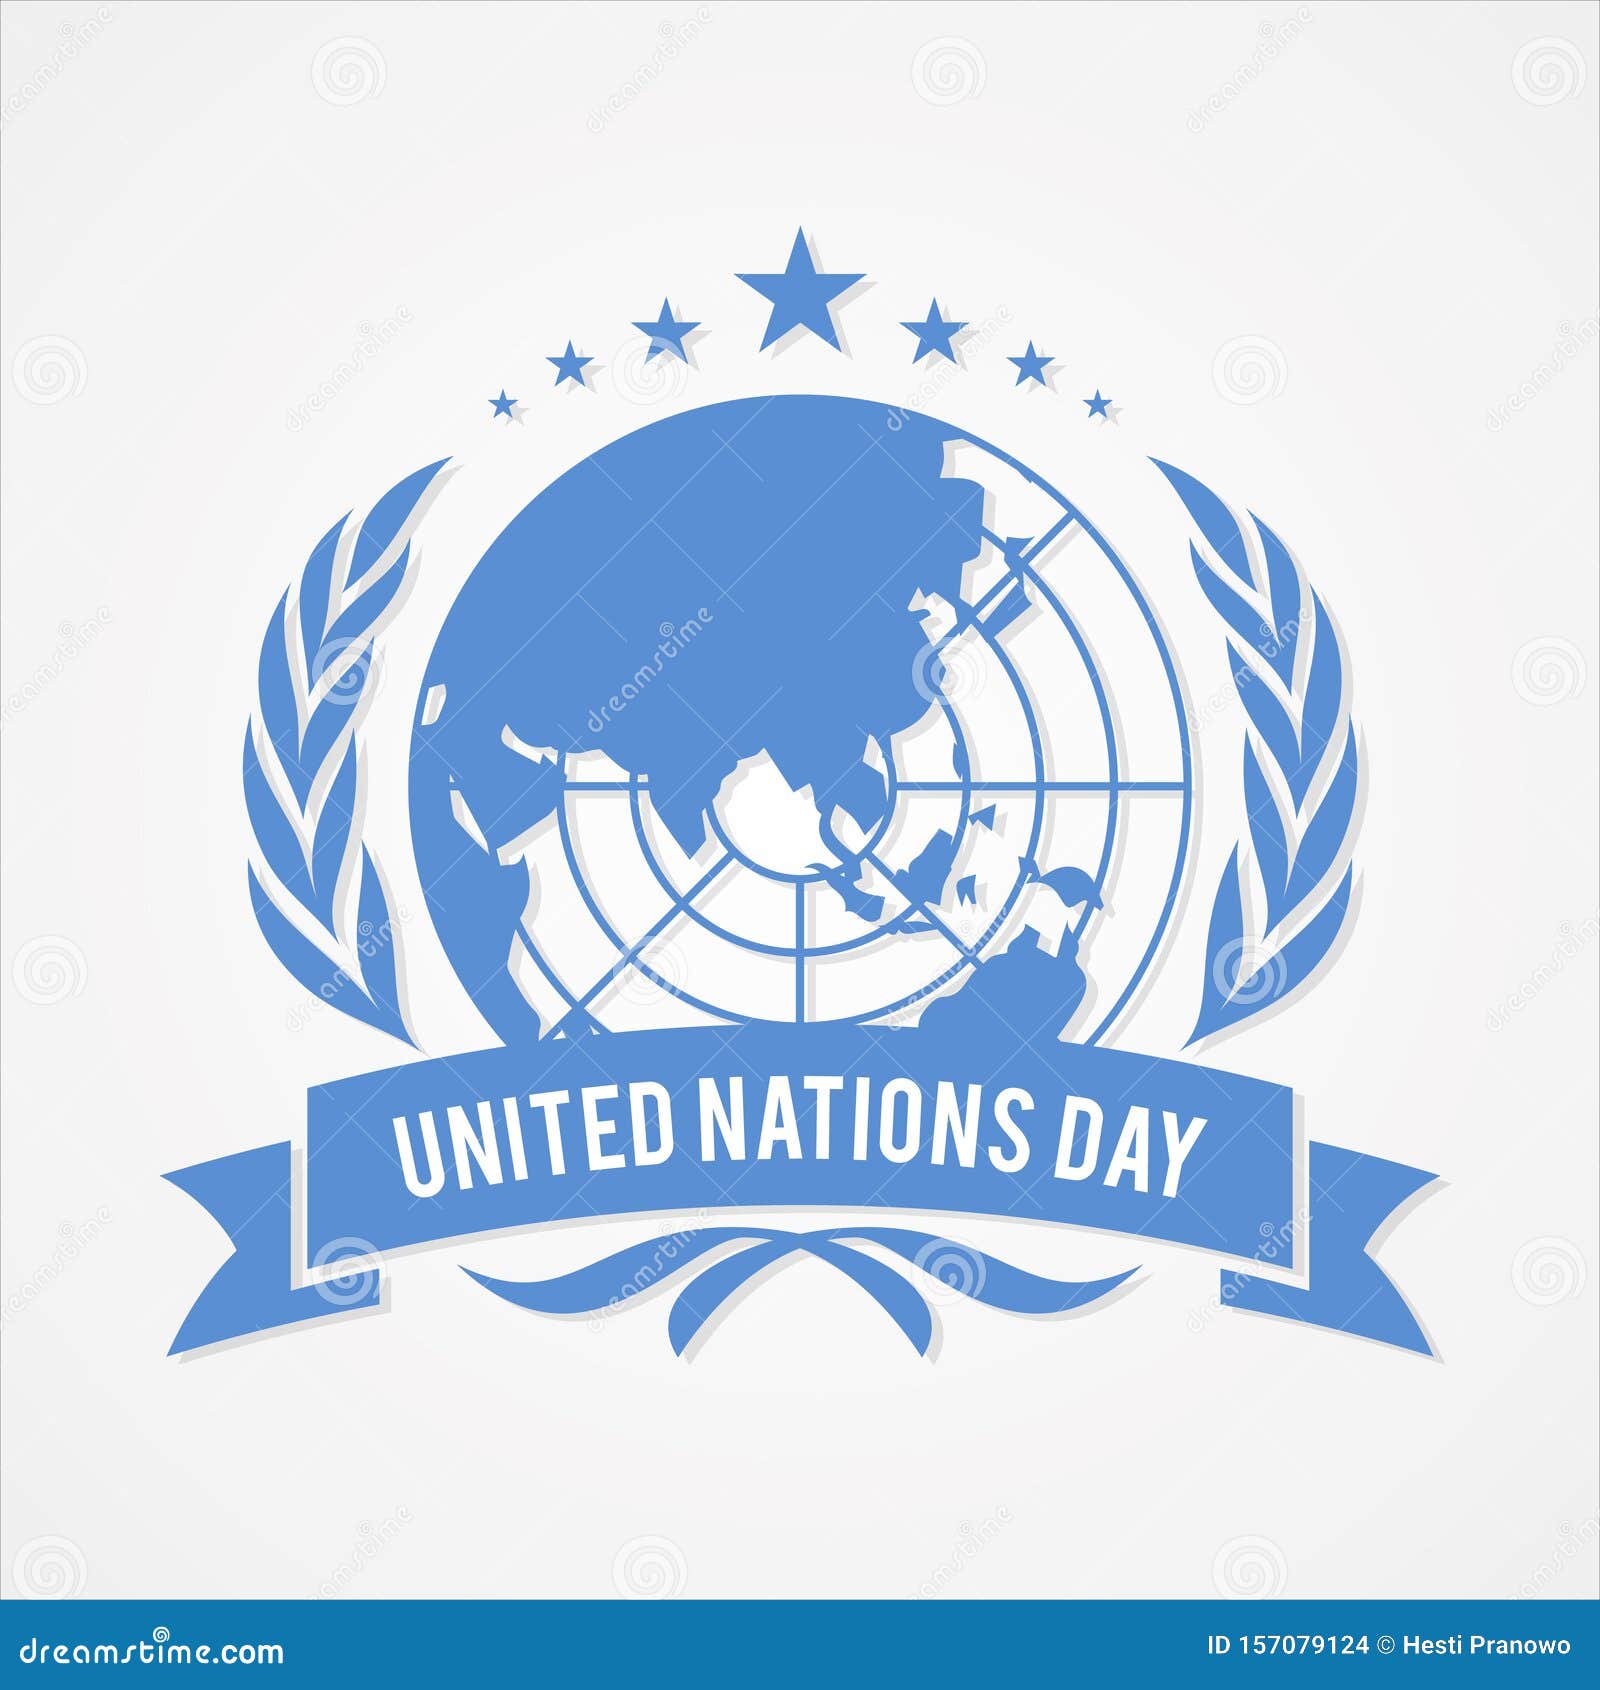 Ngày Liên Hiệp Quốc: Ngày Liên Hiệp Quốc là ngày để cả thế giới cùng nhau tôn vinh những nỗ lực của tổ chức này. Hãy xem hình ảnh liên quan để cảm nhận rõ hơn về tầm quan trọng của ngày này và cách nó được kỷ niệm ở khắp nơi trên thế giới.